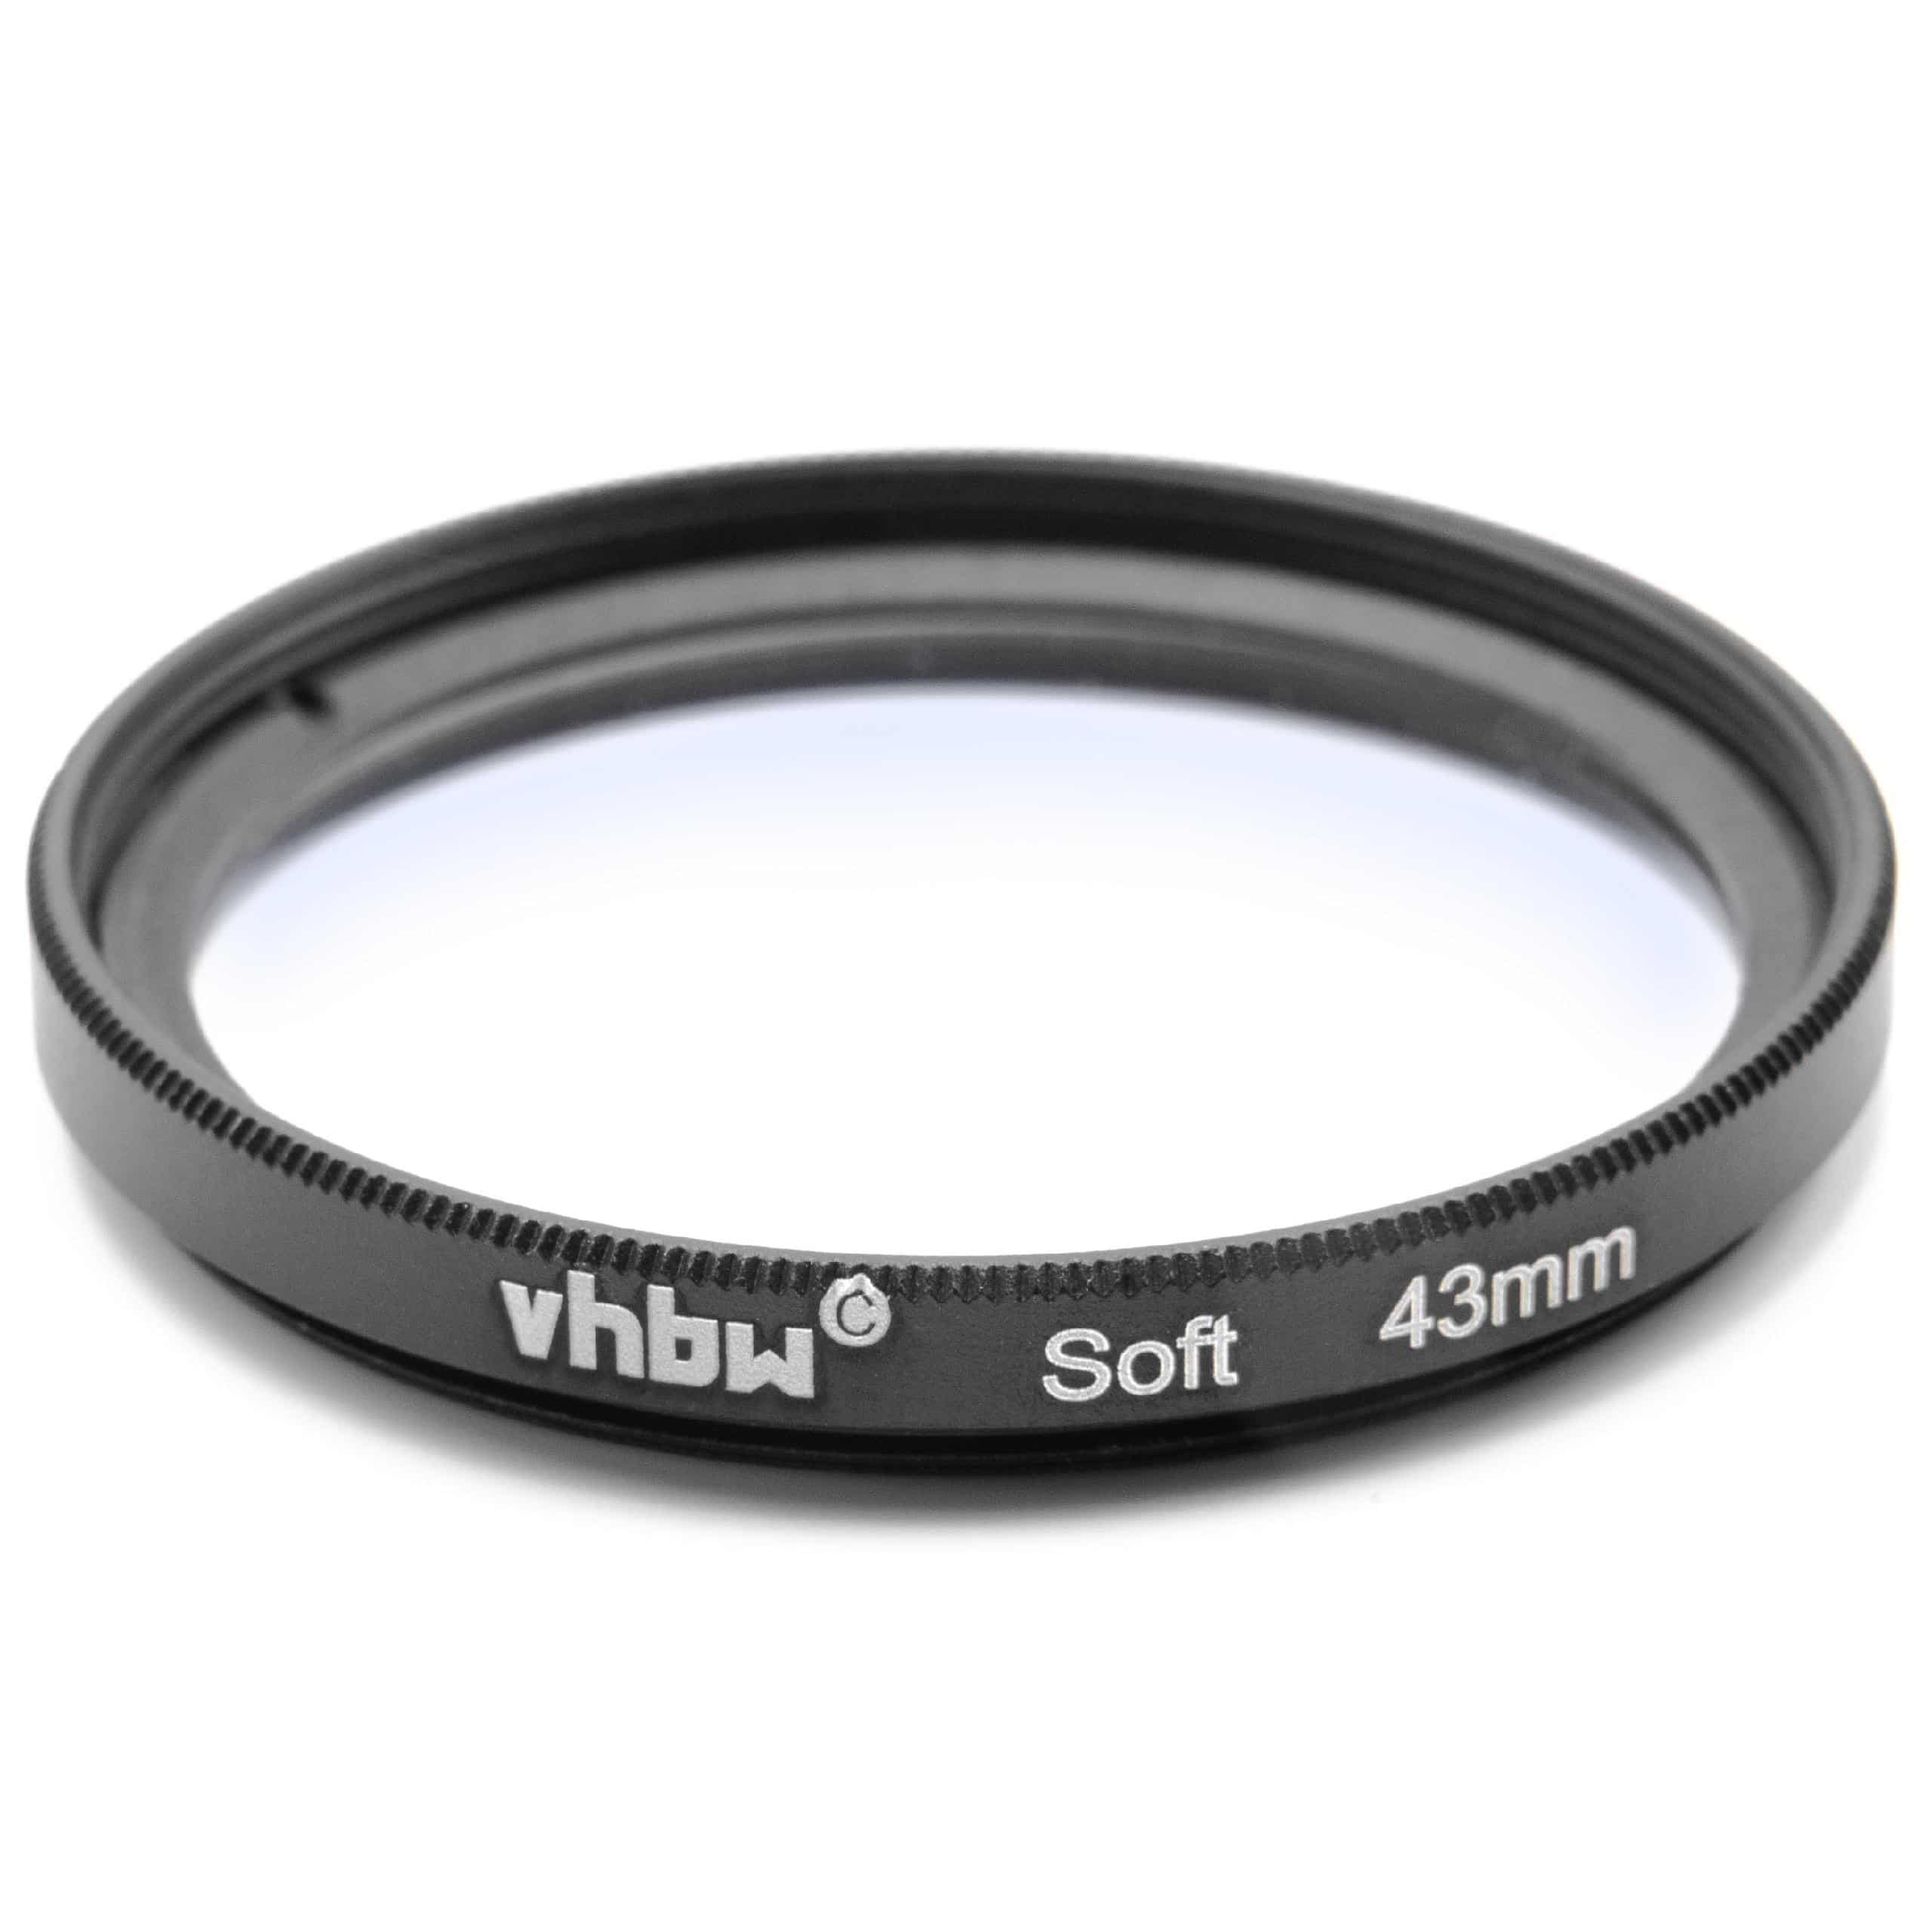 Filtre soft pour objectif d'appareil photo de diamètre 43 mm - Filtre doux